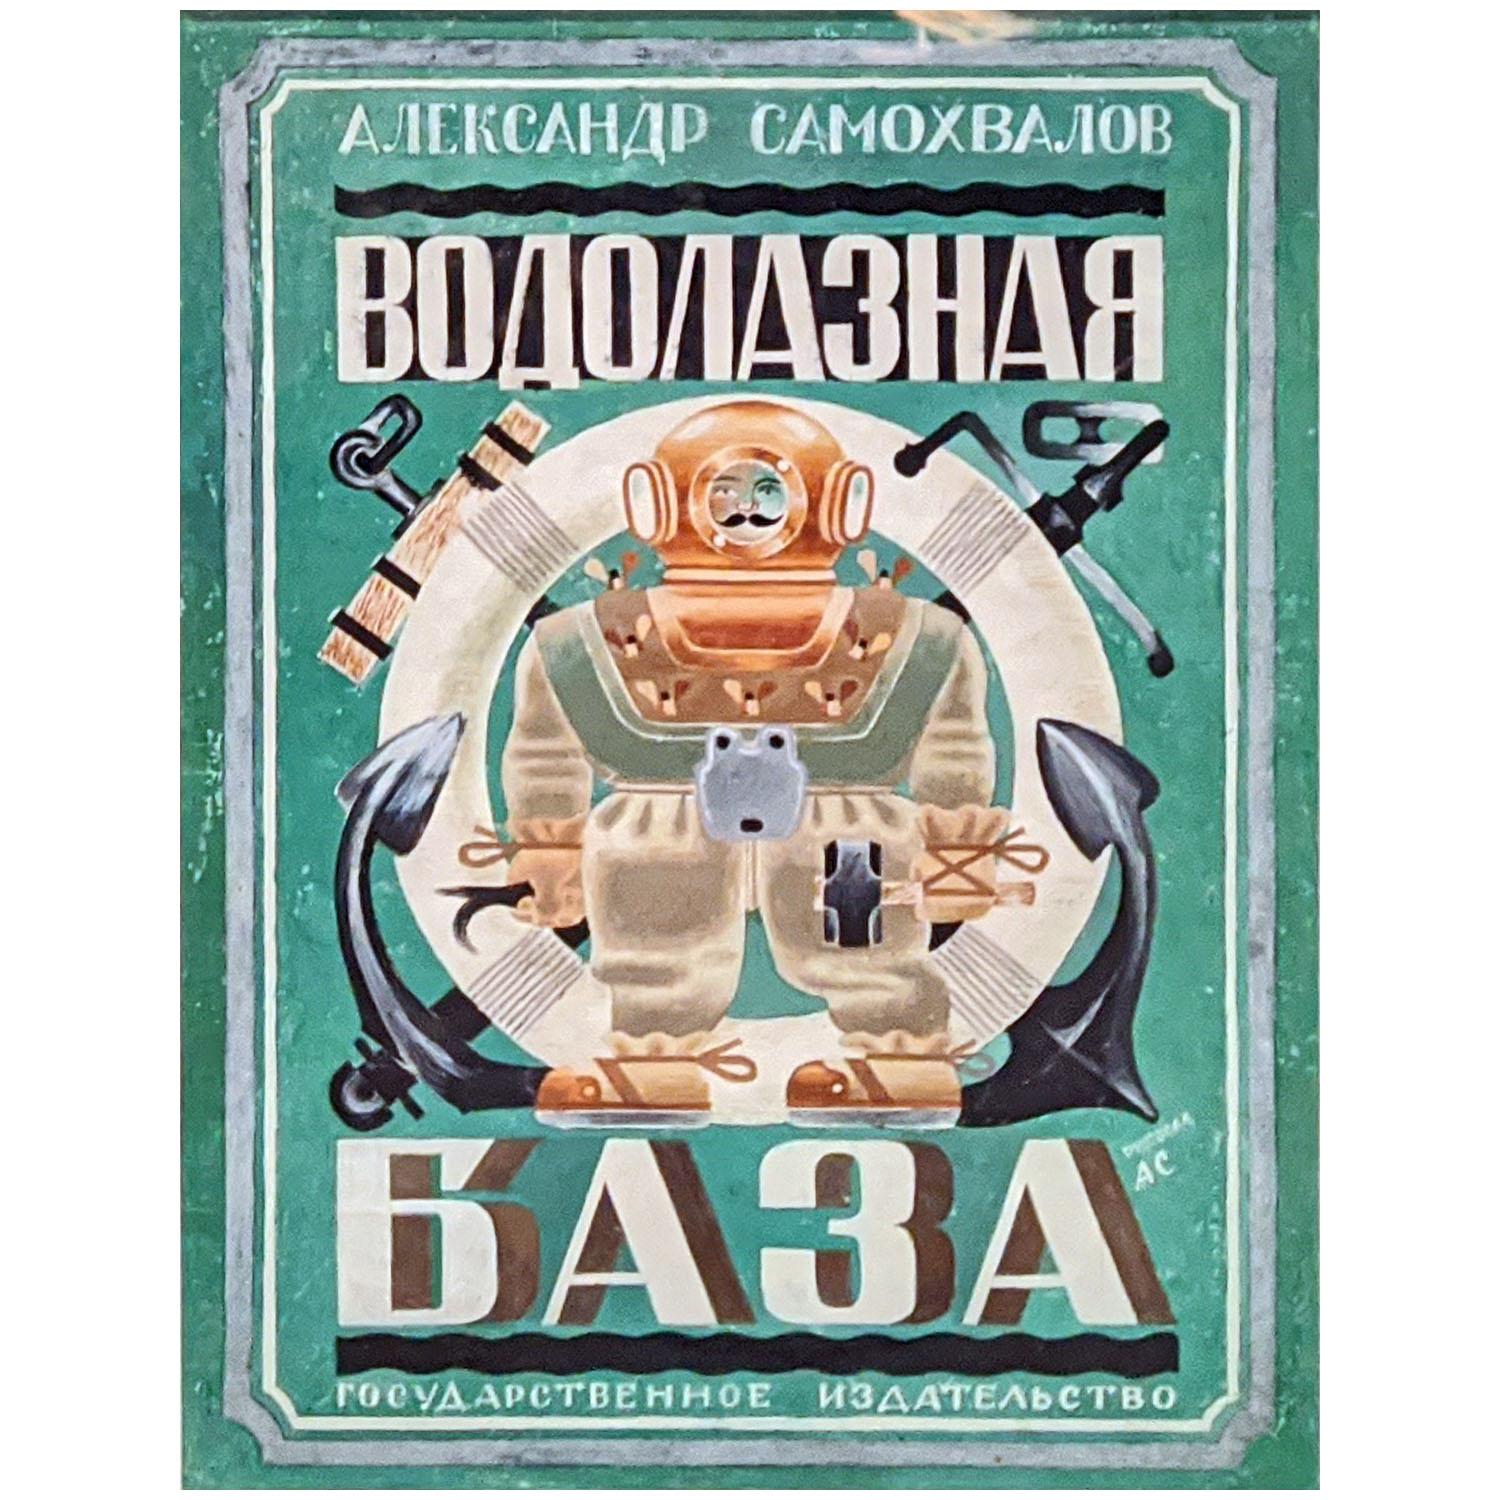 А. Самохвалов. Обложка книги «Водолазная база». 1928. Русский музей